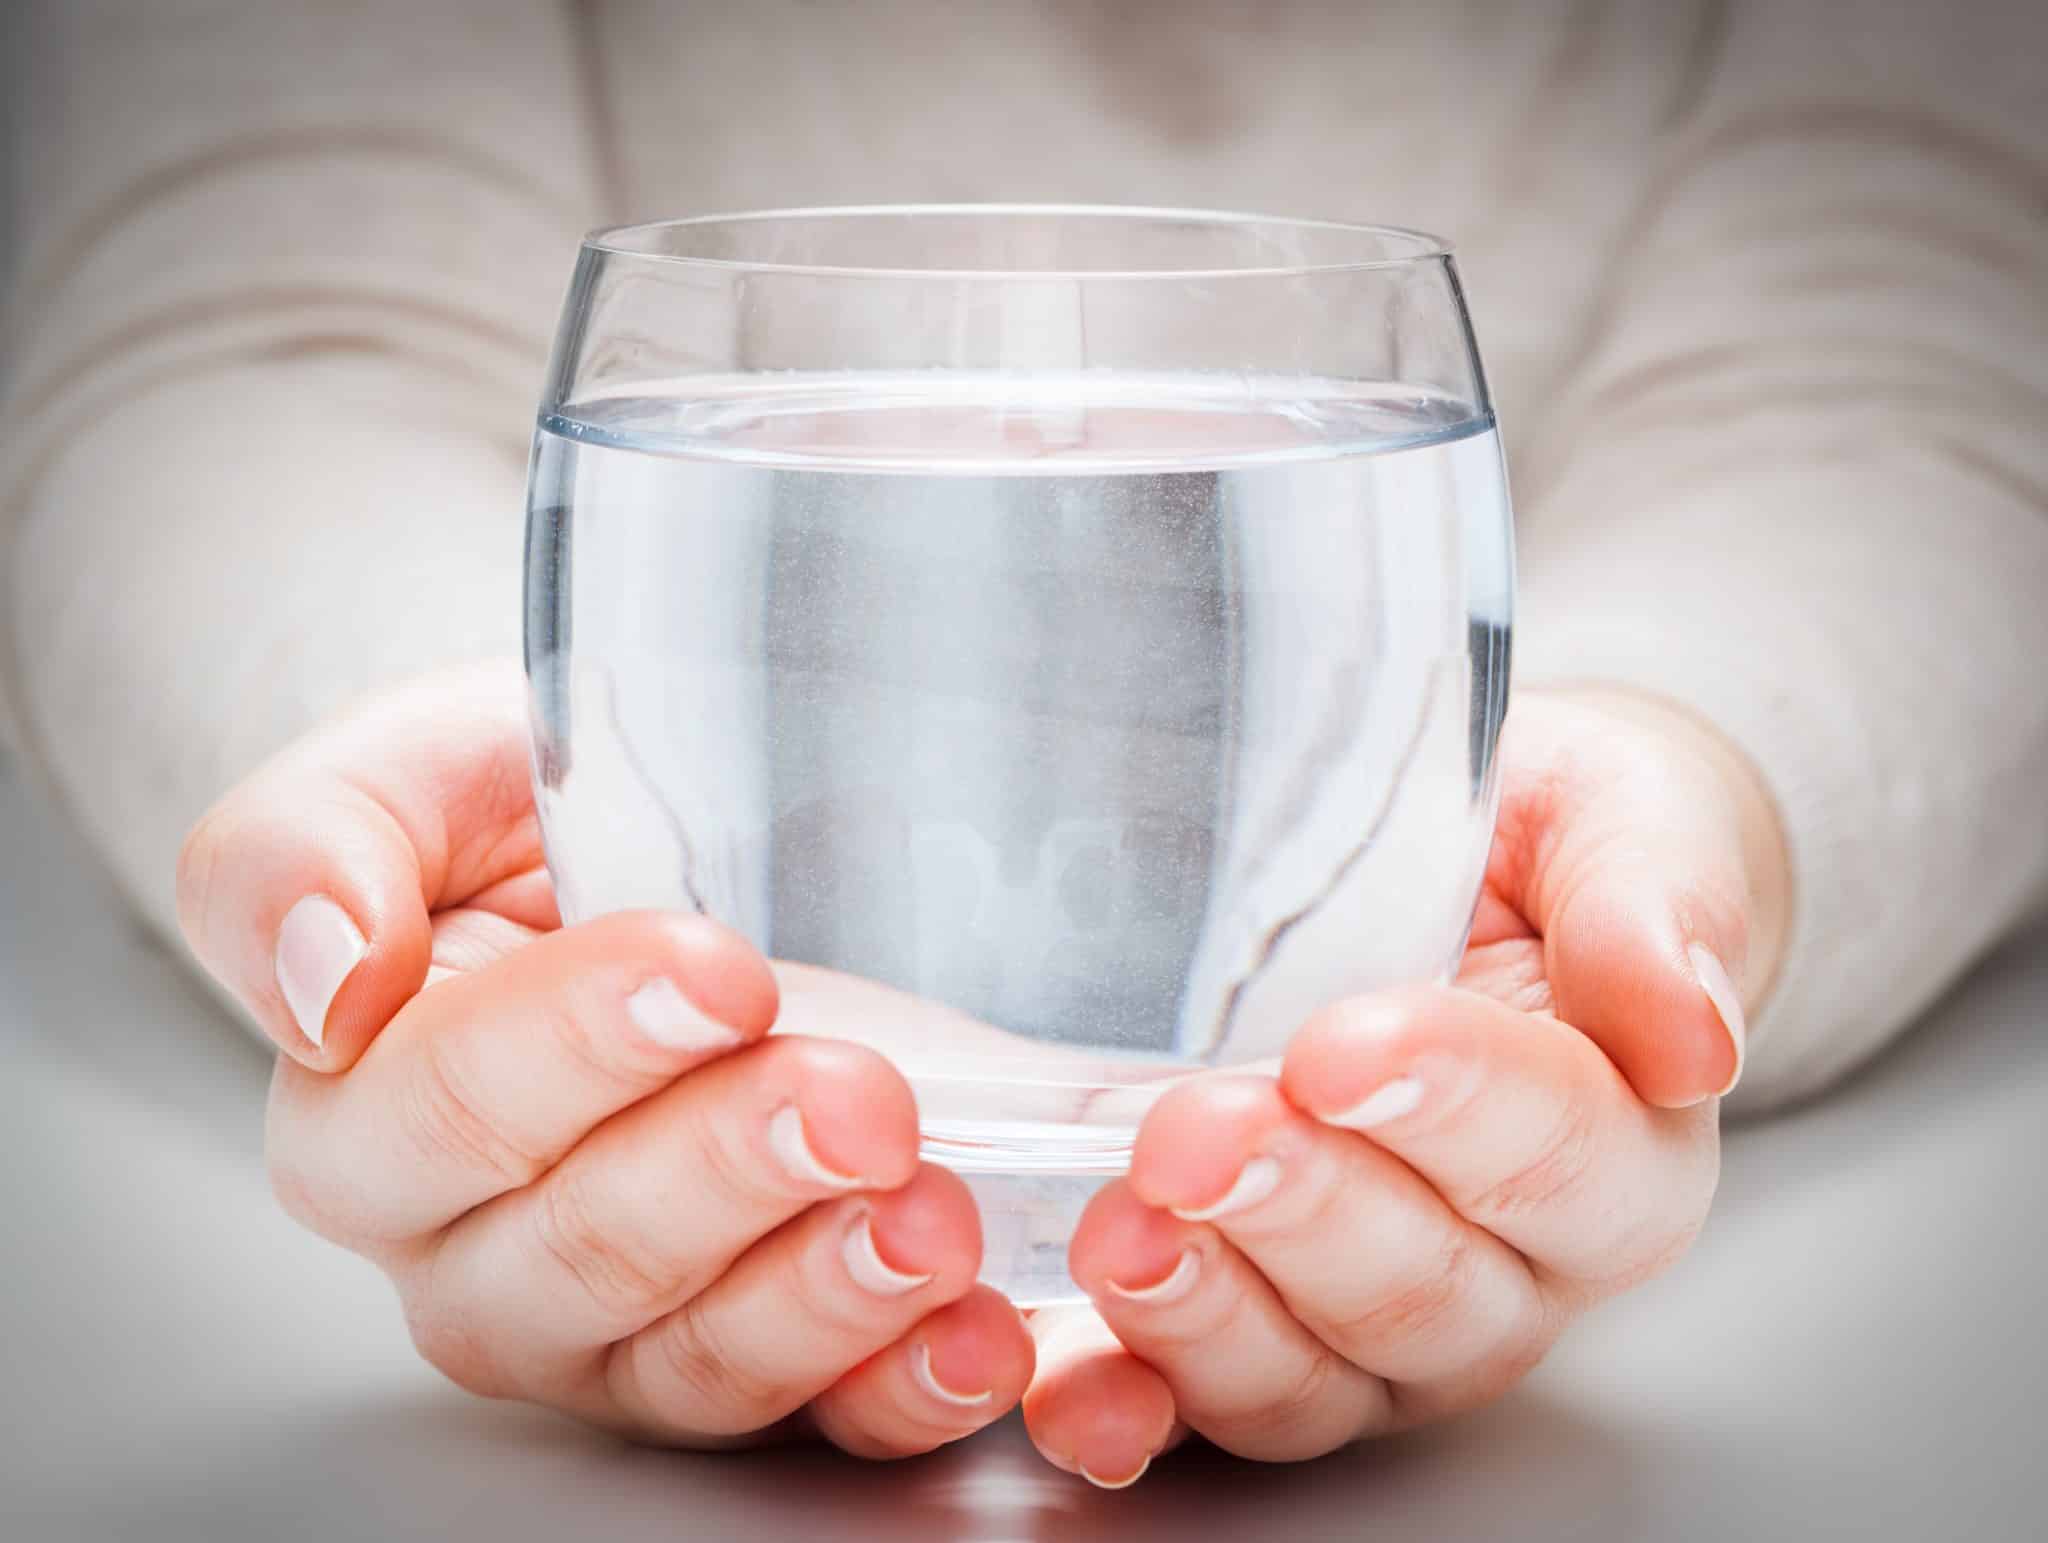 Zwei Hände, die eine große Glasschale mit Wasser halten